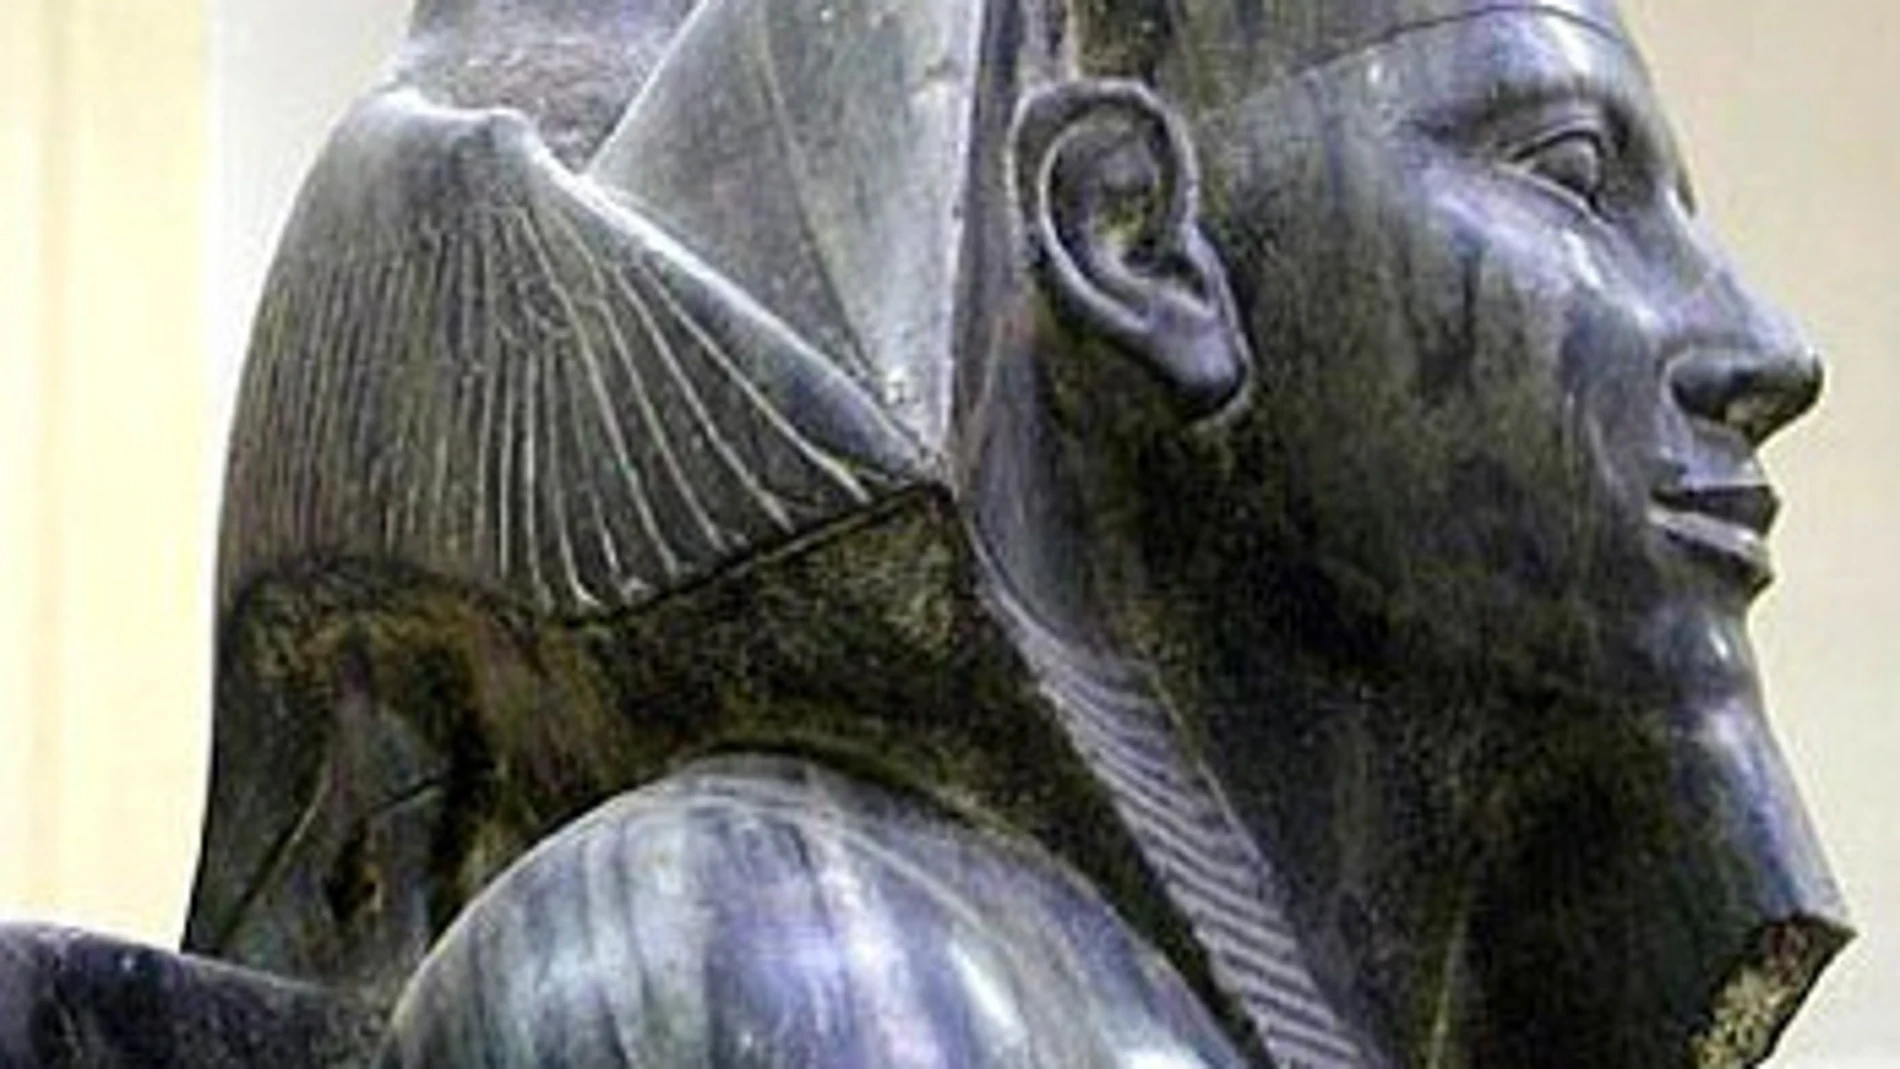 El halcón que rodea la cabeza del faraón simboliza el dios Horus